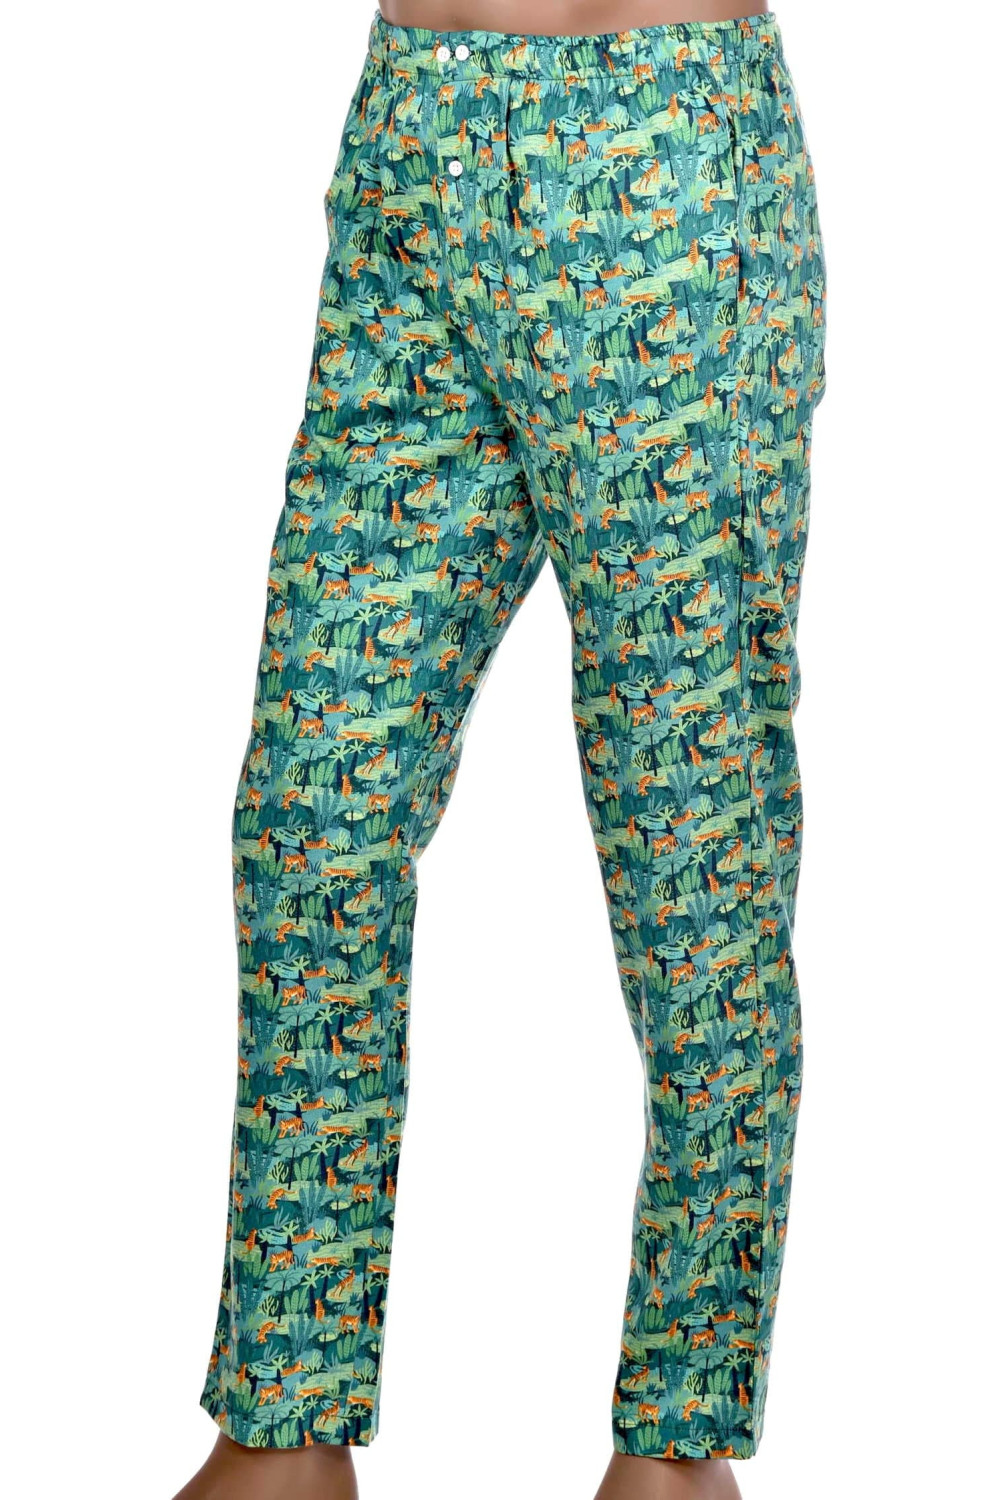 Pantalon de Pyjama en Satin de Coton pour Homme élégant et Confortable